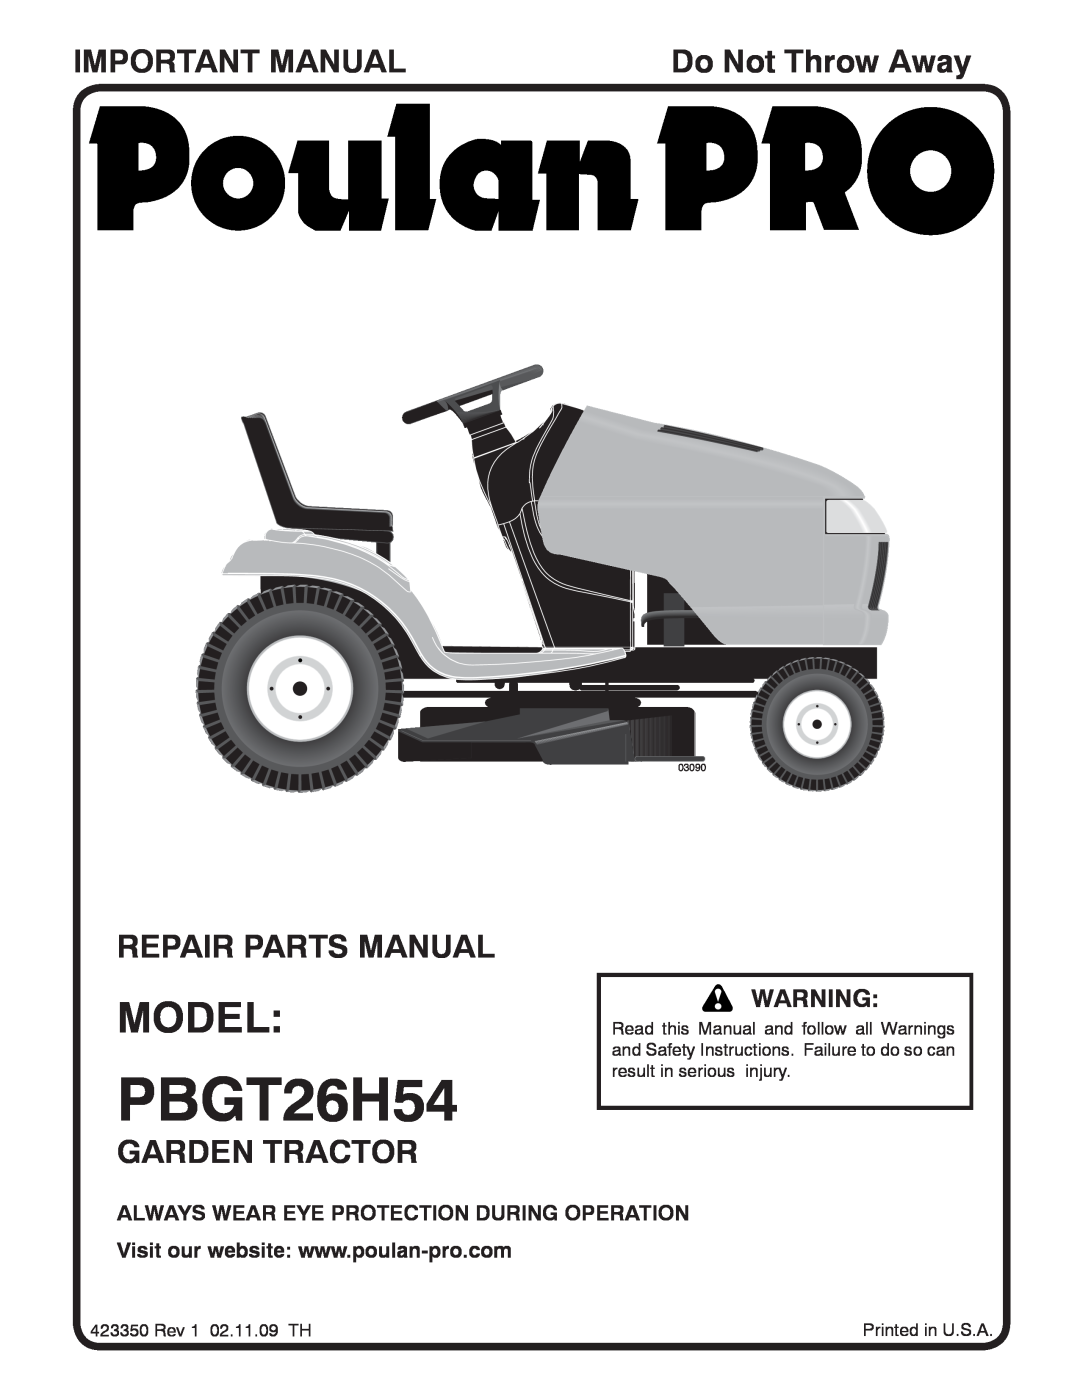 Poulan PBGT26H54 manual Model, Important Manual, Repair Parts Manual, Garden Tractor, Do Not Throw Away, 03090 